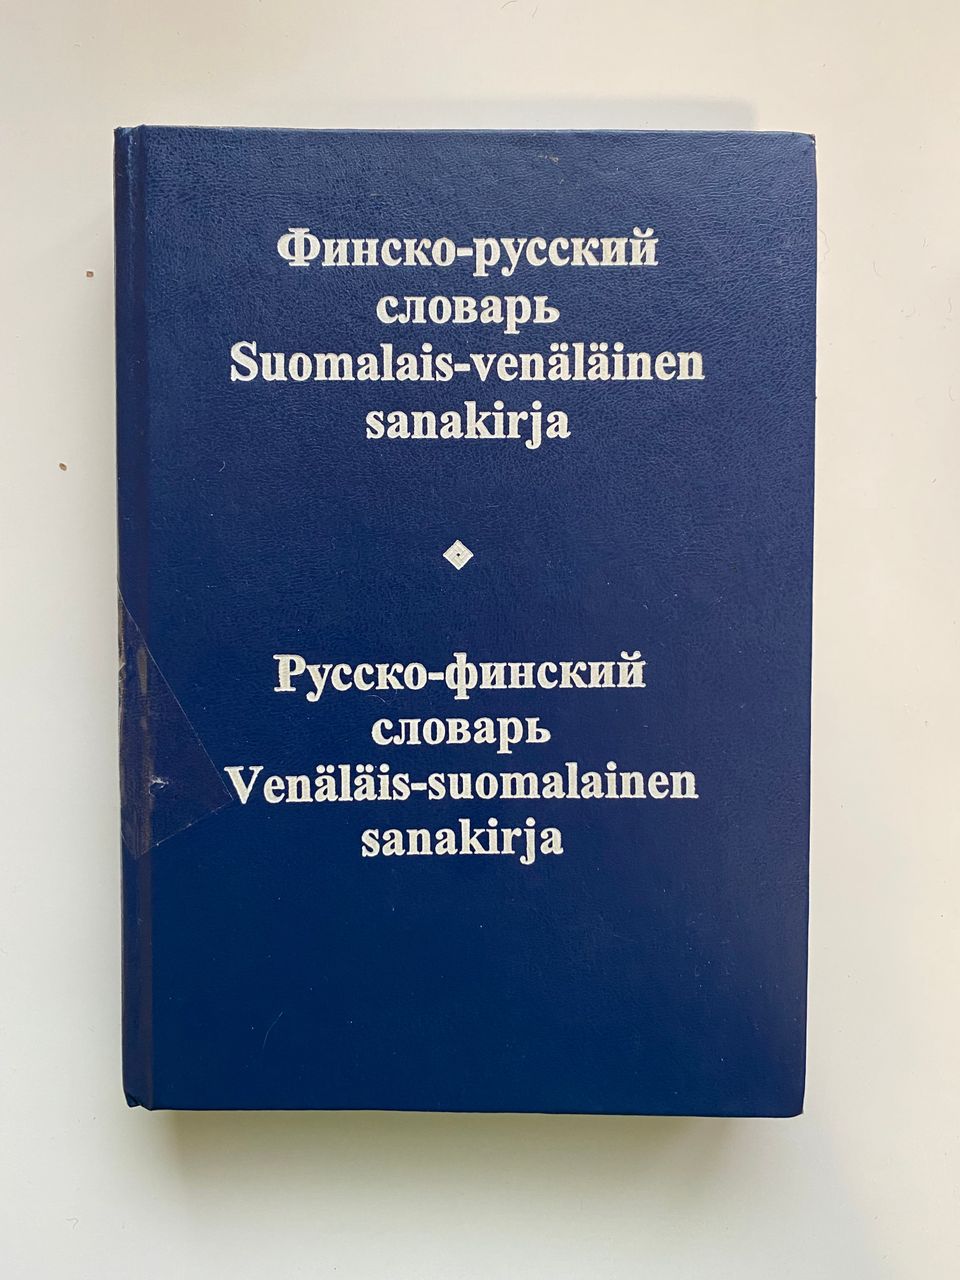 suomalaisvenäläinen sanakirja